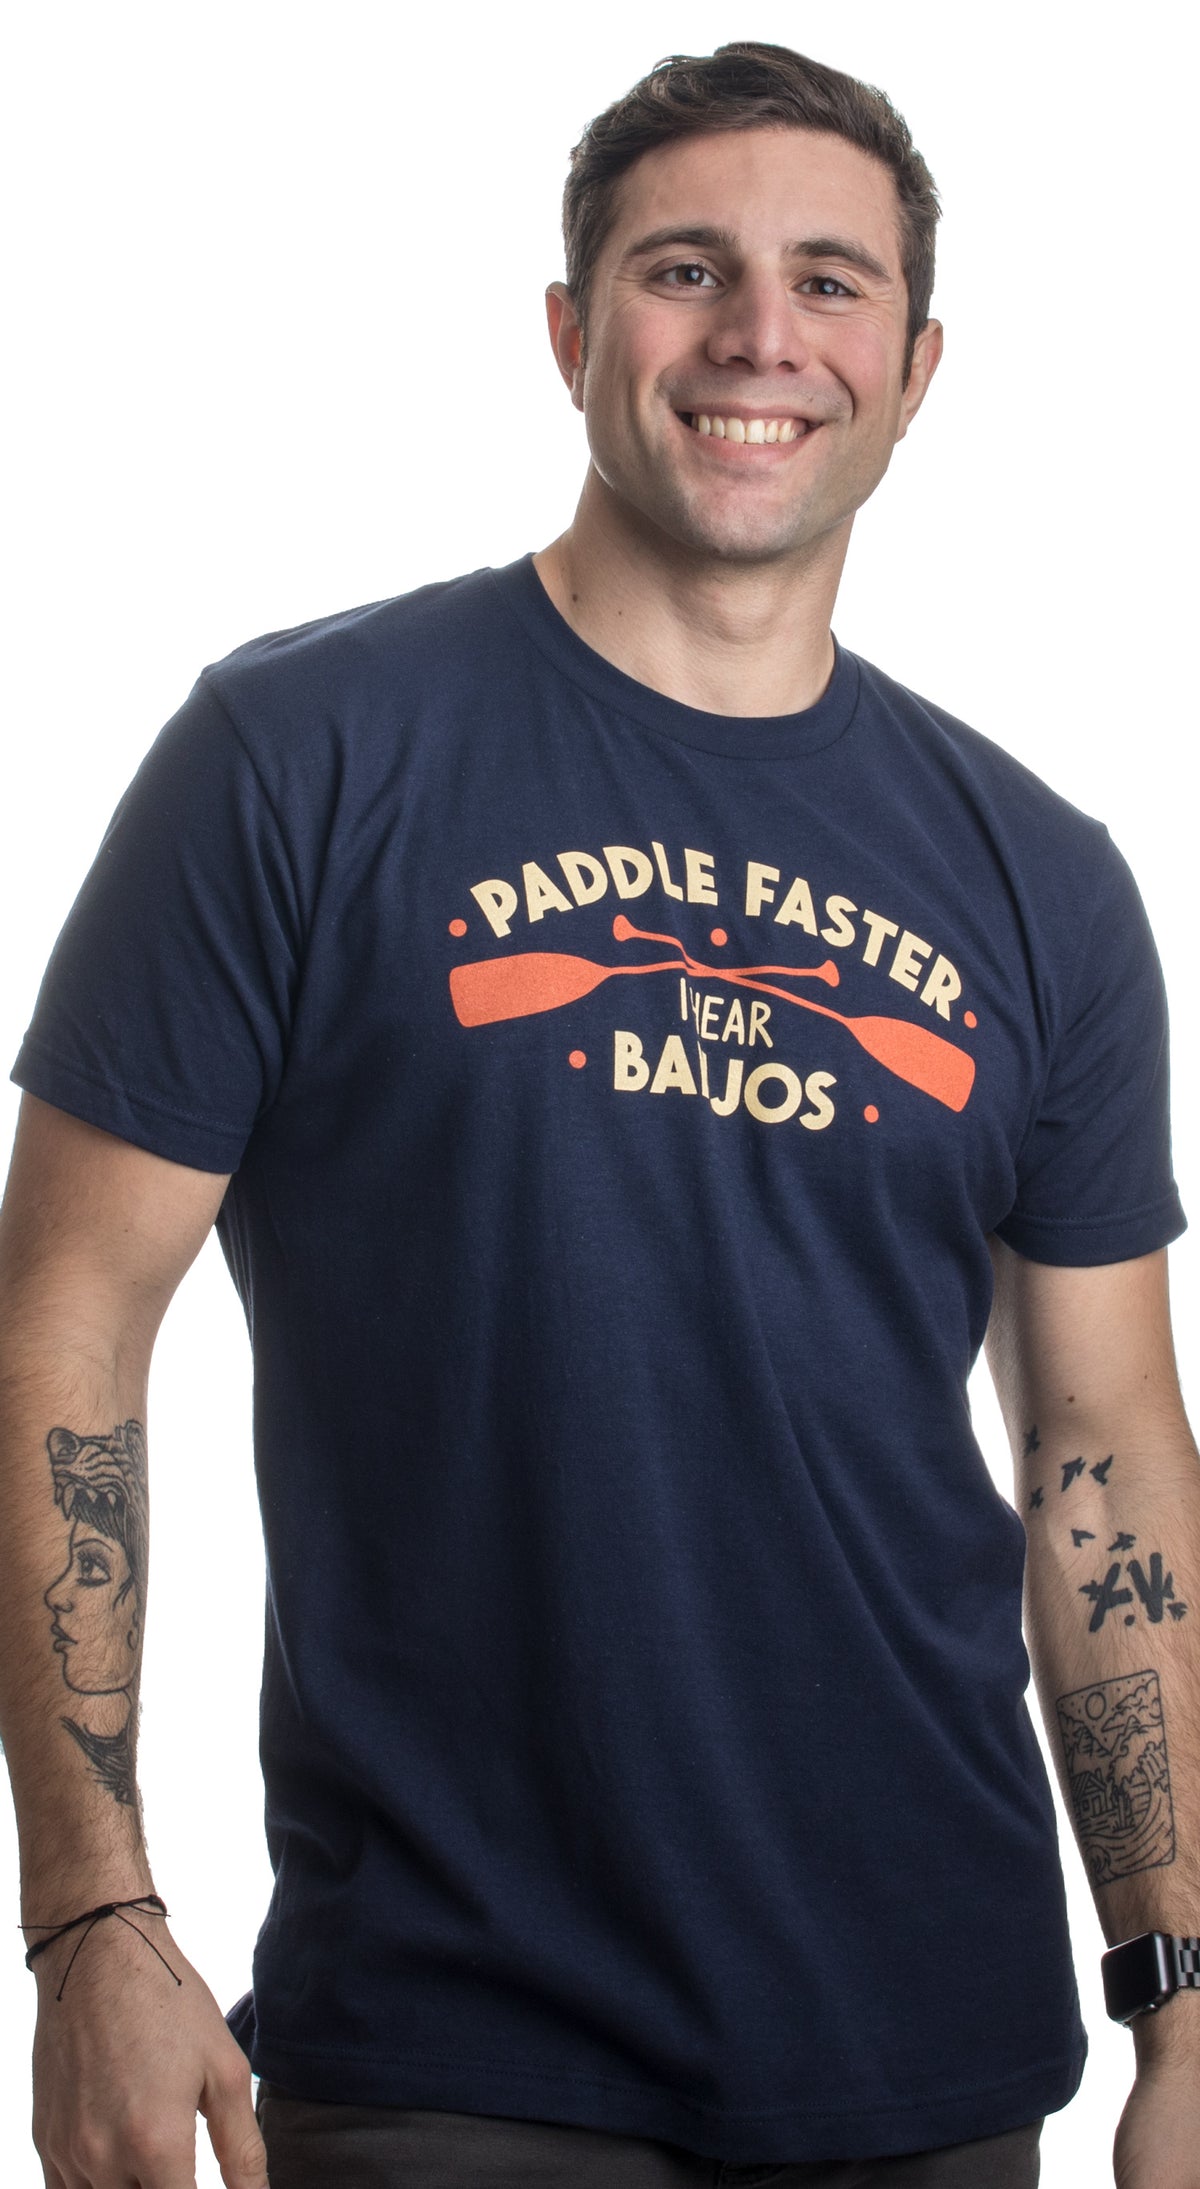 Paddle Faster, I Hear Banjos | Funny Camping, River Rafting Canoe Kayak T-shirt